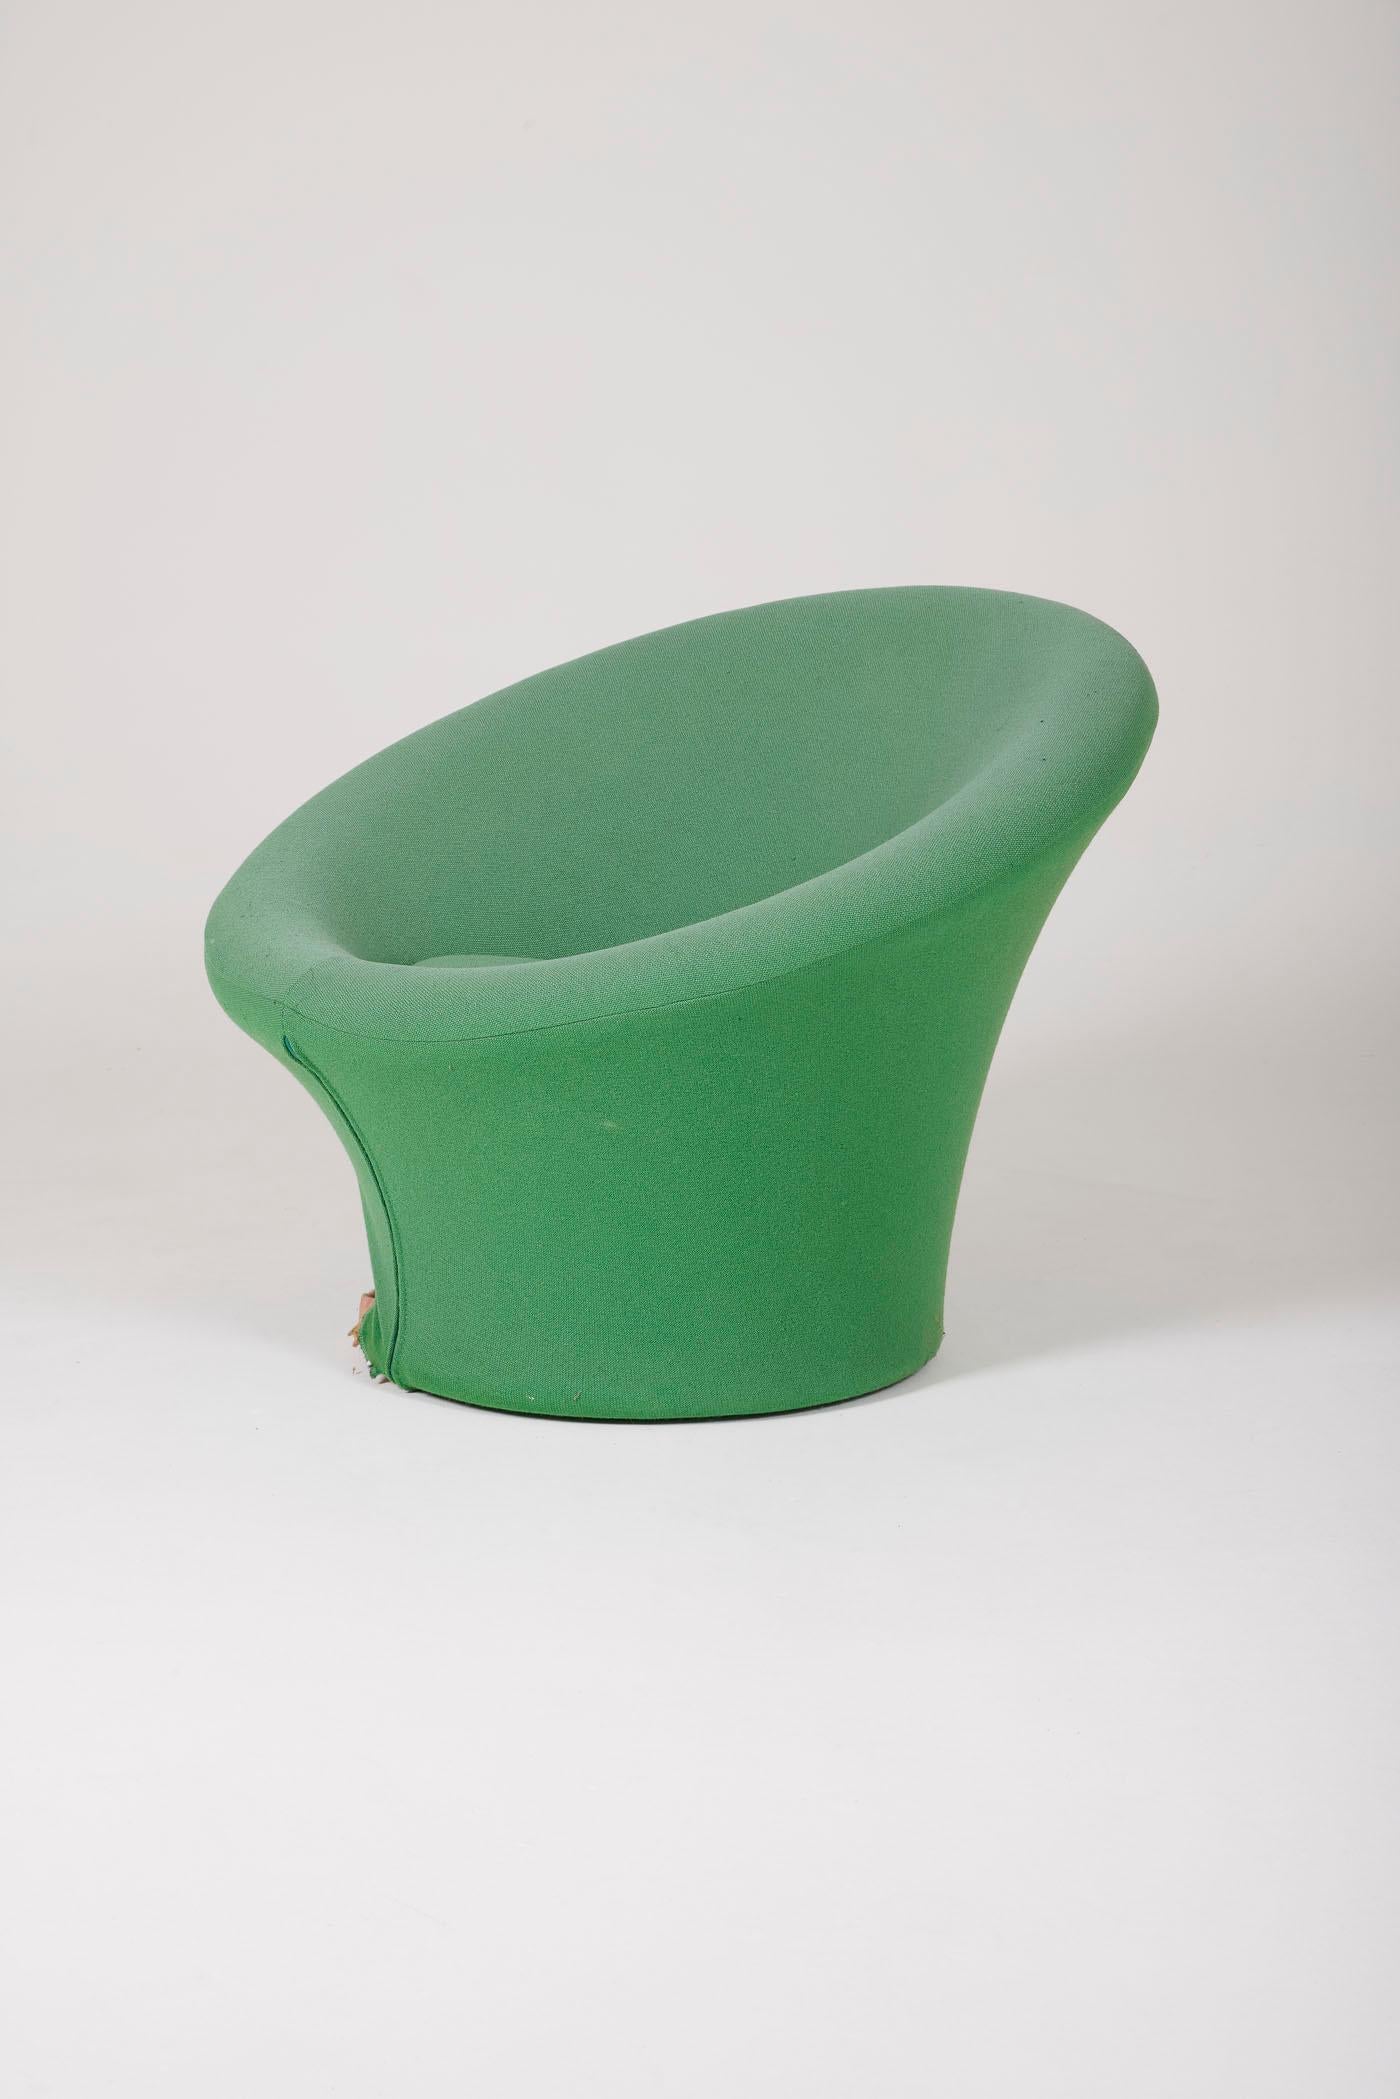  Fauteuil champignon du designer français Pierre Paulin (1927-2009), édité par Artifort dans les années 1960. Ce fauteuil emblématique est tapissé dans son tissu vert d'origine. Révolutionnant le monde du design dans les années 1960 avec ses